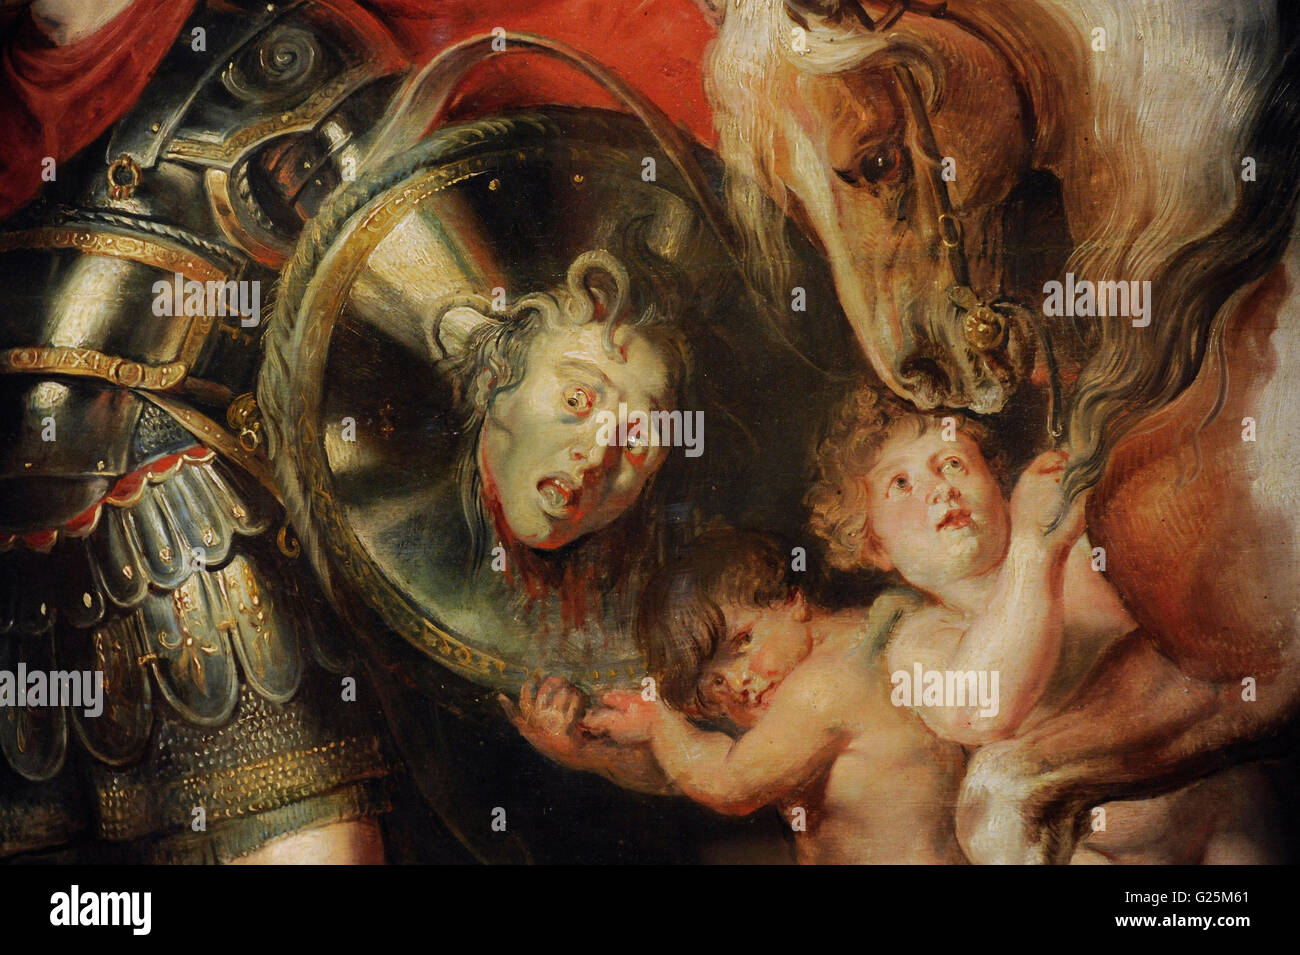 Rubens (1577-1640), flämischer Maler. Perseus Befreiung Andromeda. Öl auf Leinwand. Barock-Stil. 1622. Detail: Eros, Pegasus und Gorgon Schild.  Die Eremitage. Sankt Petersburg. Russland. Stockfoto